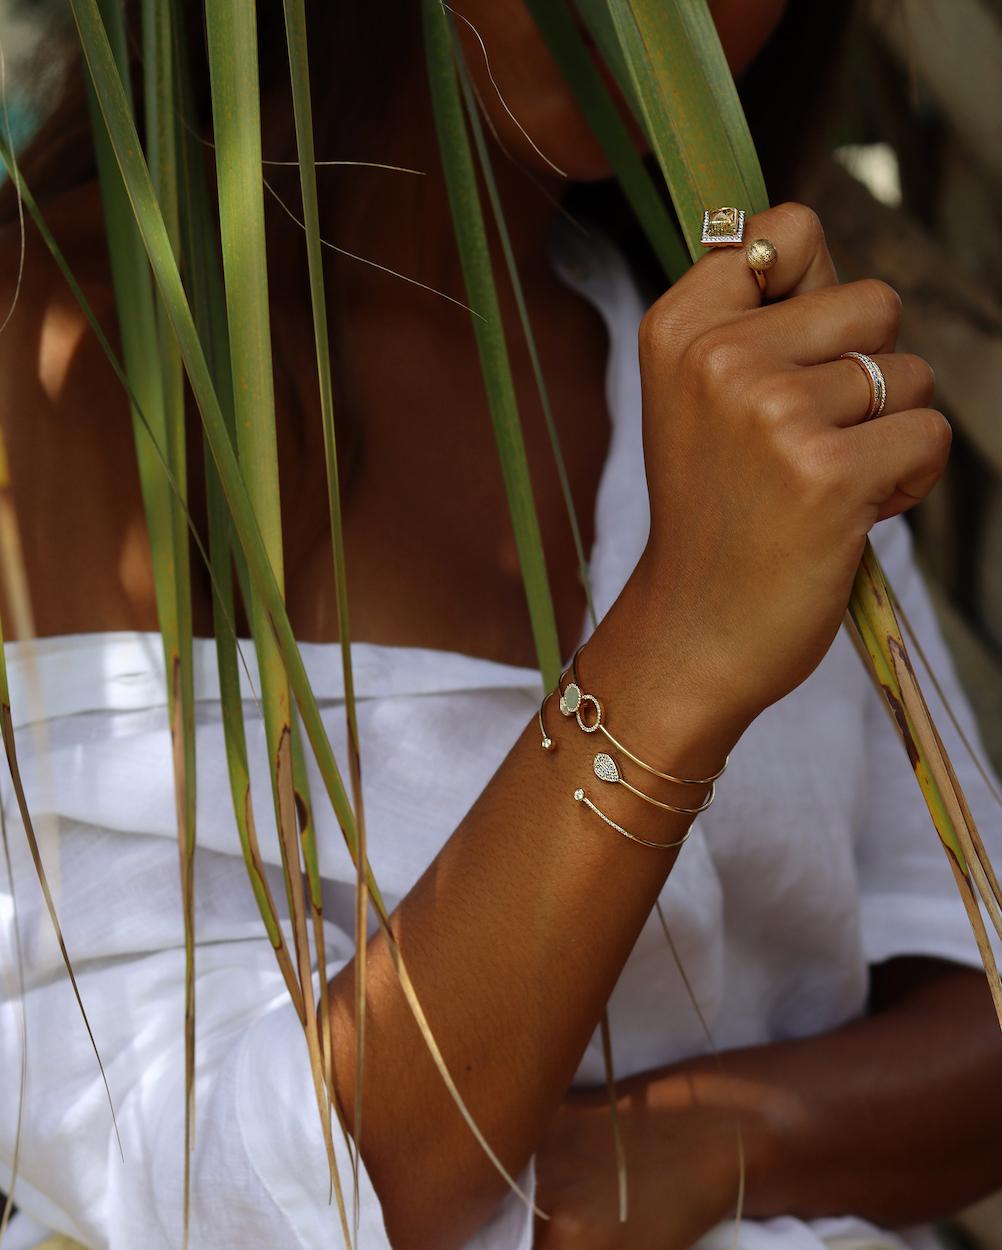 Das Bezel Diamond Cuff Bracelet ist ein wirklich exquisites und anspruchsvolles Schmuckstück, das die zeitlose Schönheit von Diamanten in einem modernen und eleganten Design präsentiert. Dieses Manschettenarmband zeichnet sich durch eine schlanke